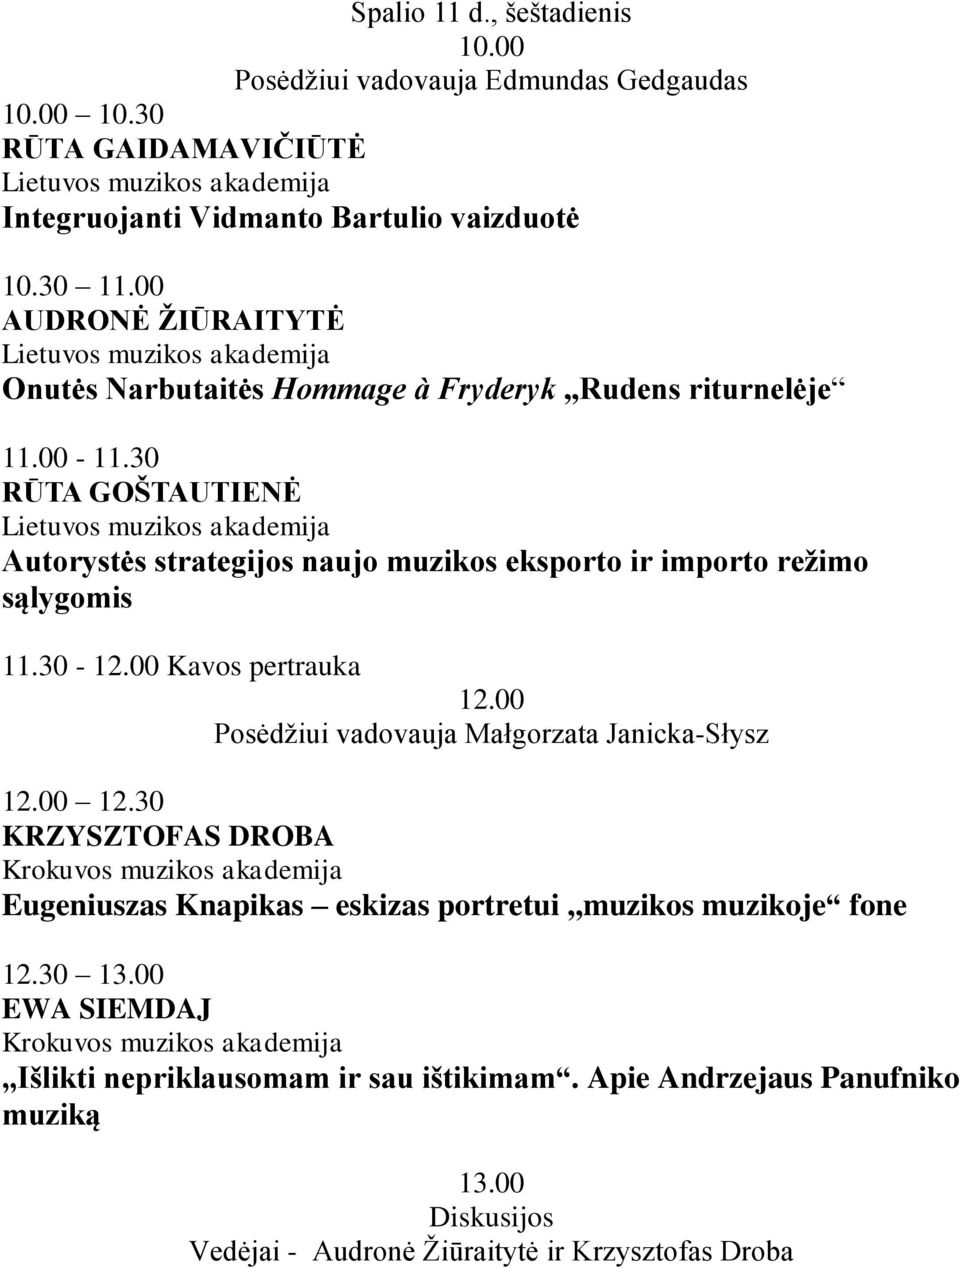 30 RŪTA GOŃTAUTIENĖ Lietuvos muzikos akademija Autorystės strategijos naujo muzikos eksporto ir importo reņimo sąlygomis 11.30-12.00 Kavos pertrauka 12.